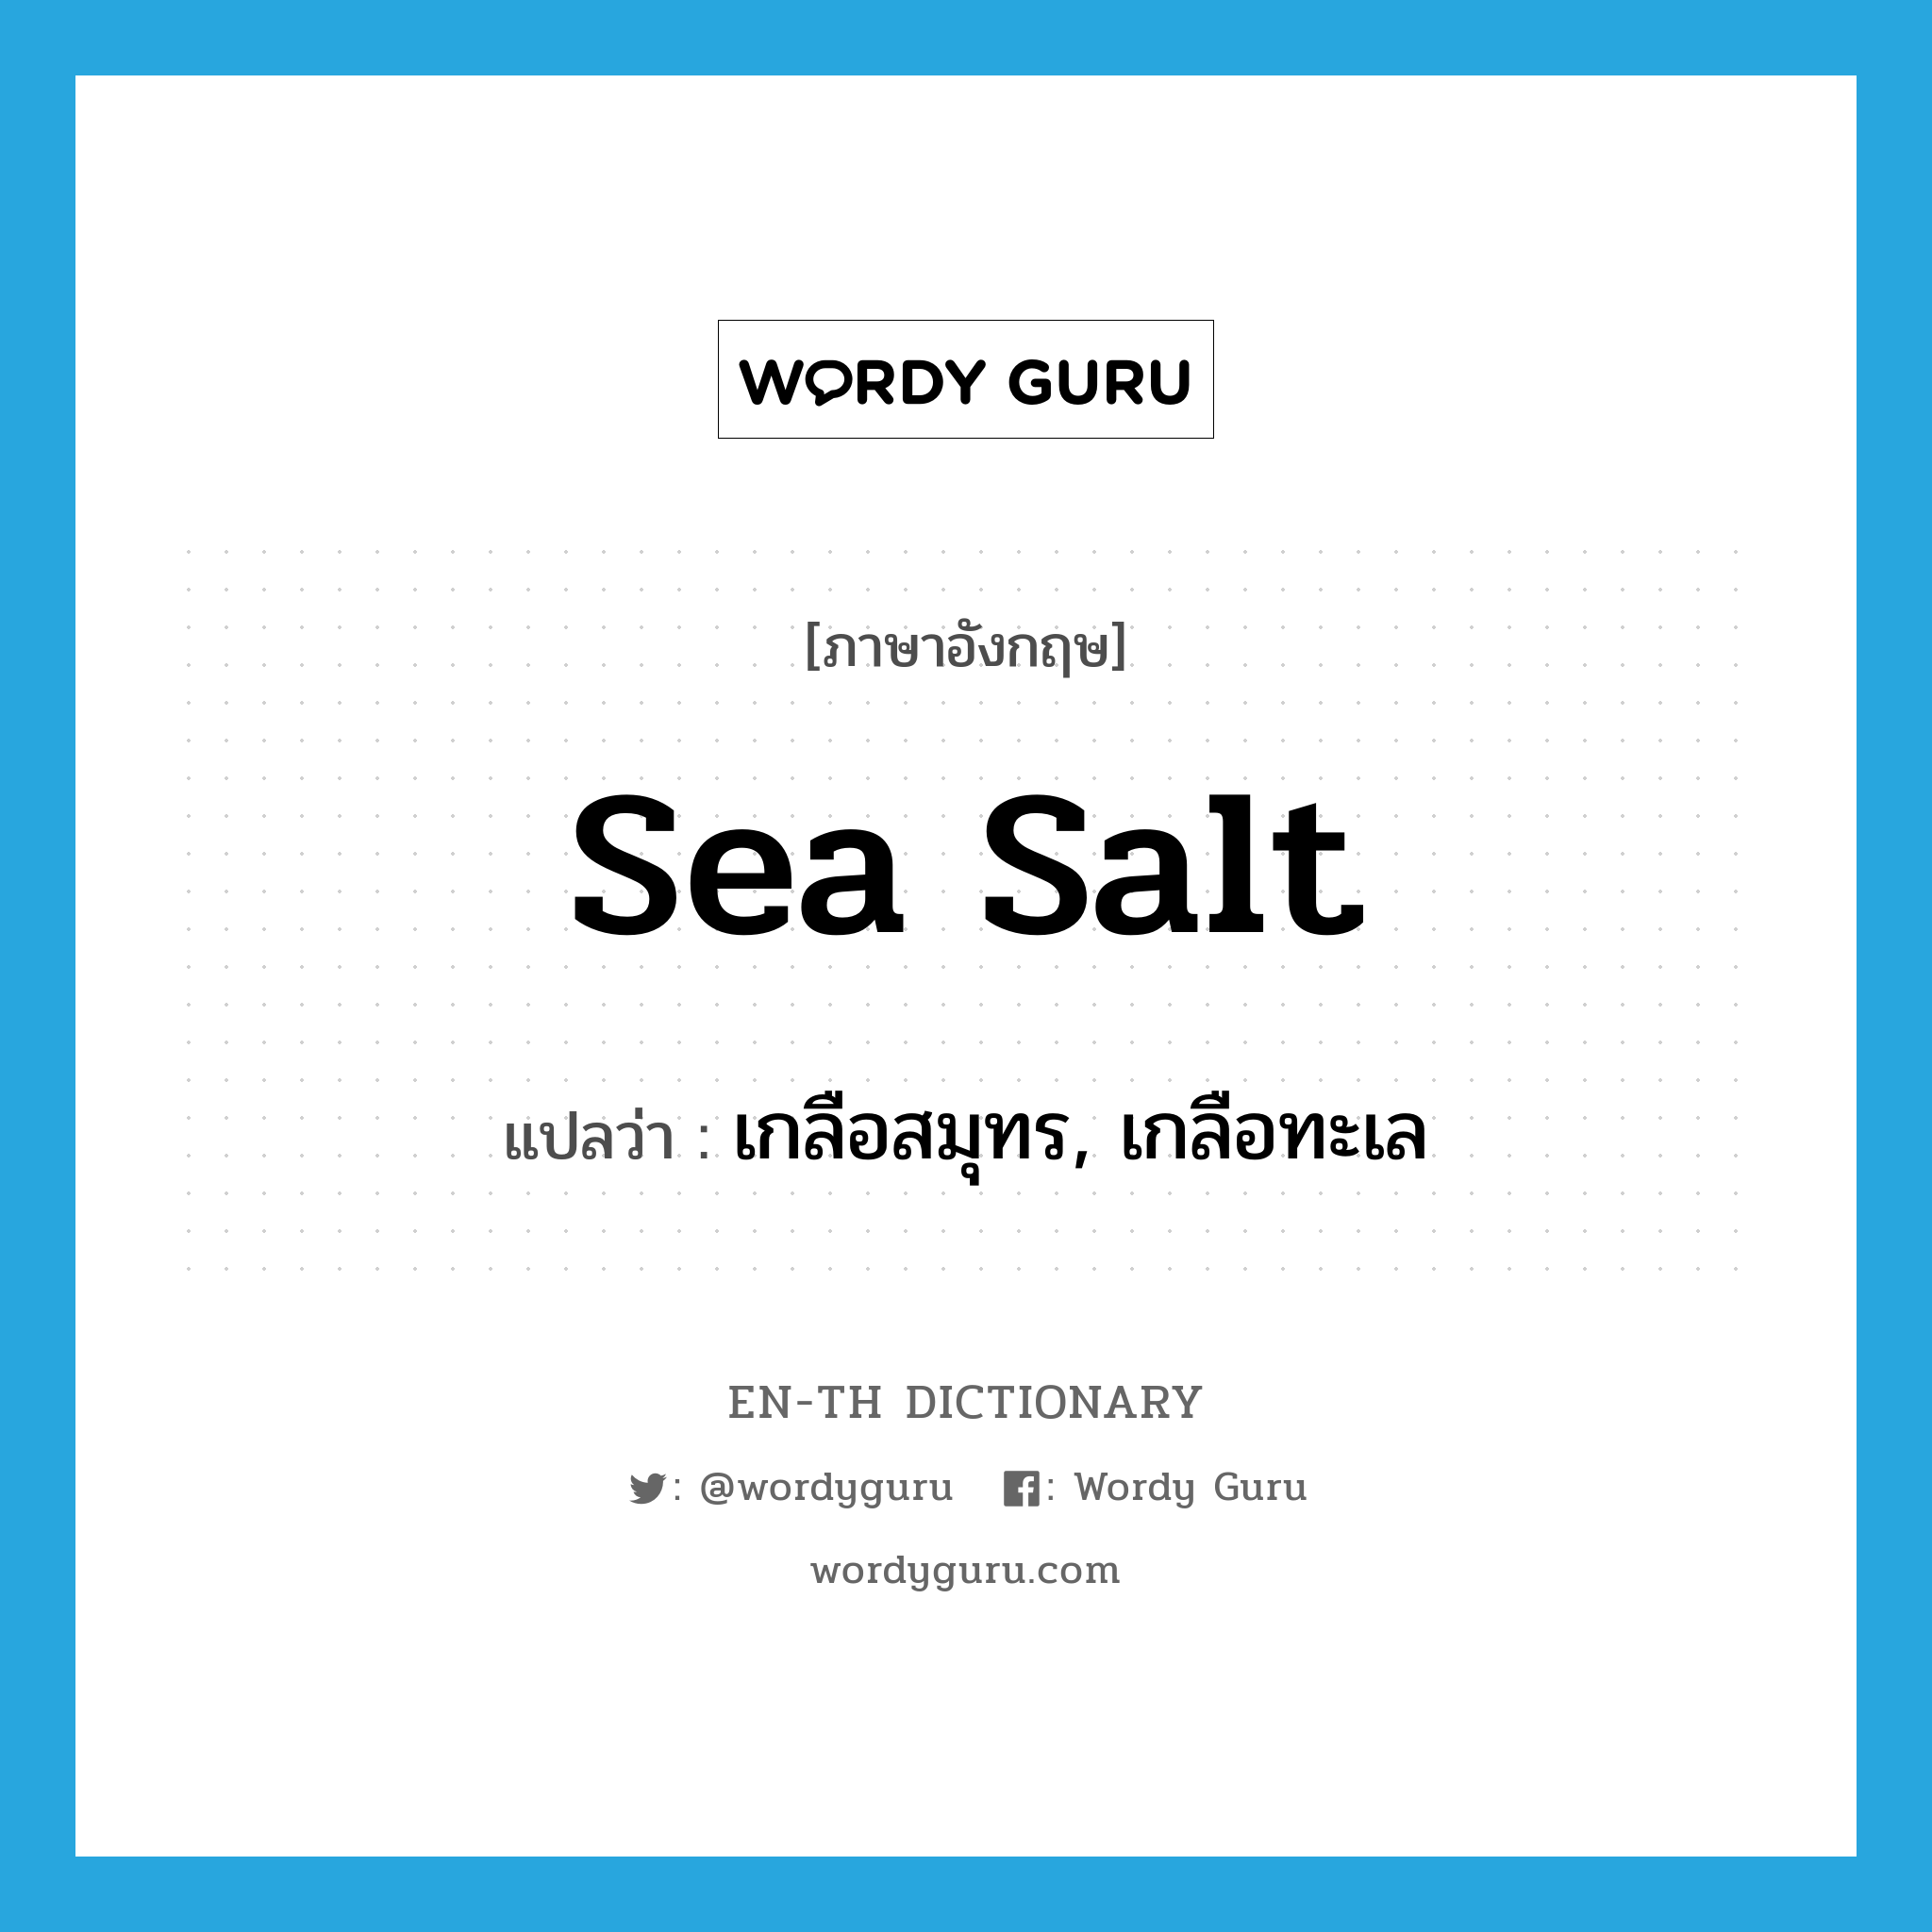 sea salt แปลว่า?, คำศัพท์ภาษาอังกฤษ sea salt แปลว่า เกลือสมุทร, เกลือทะเล ประเภท N หมวด N